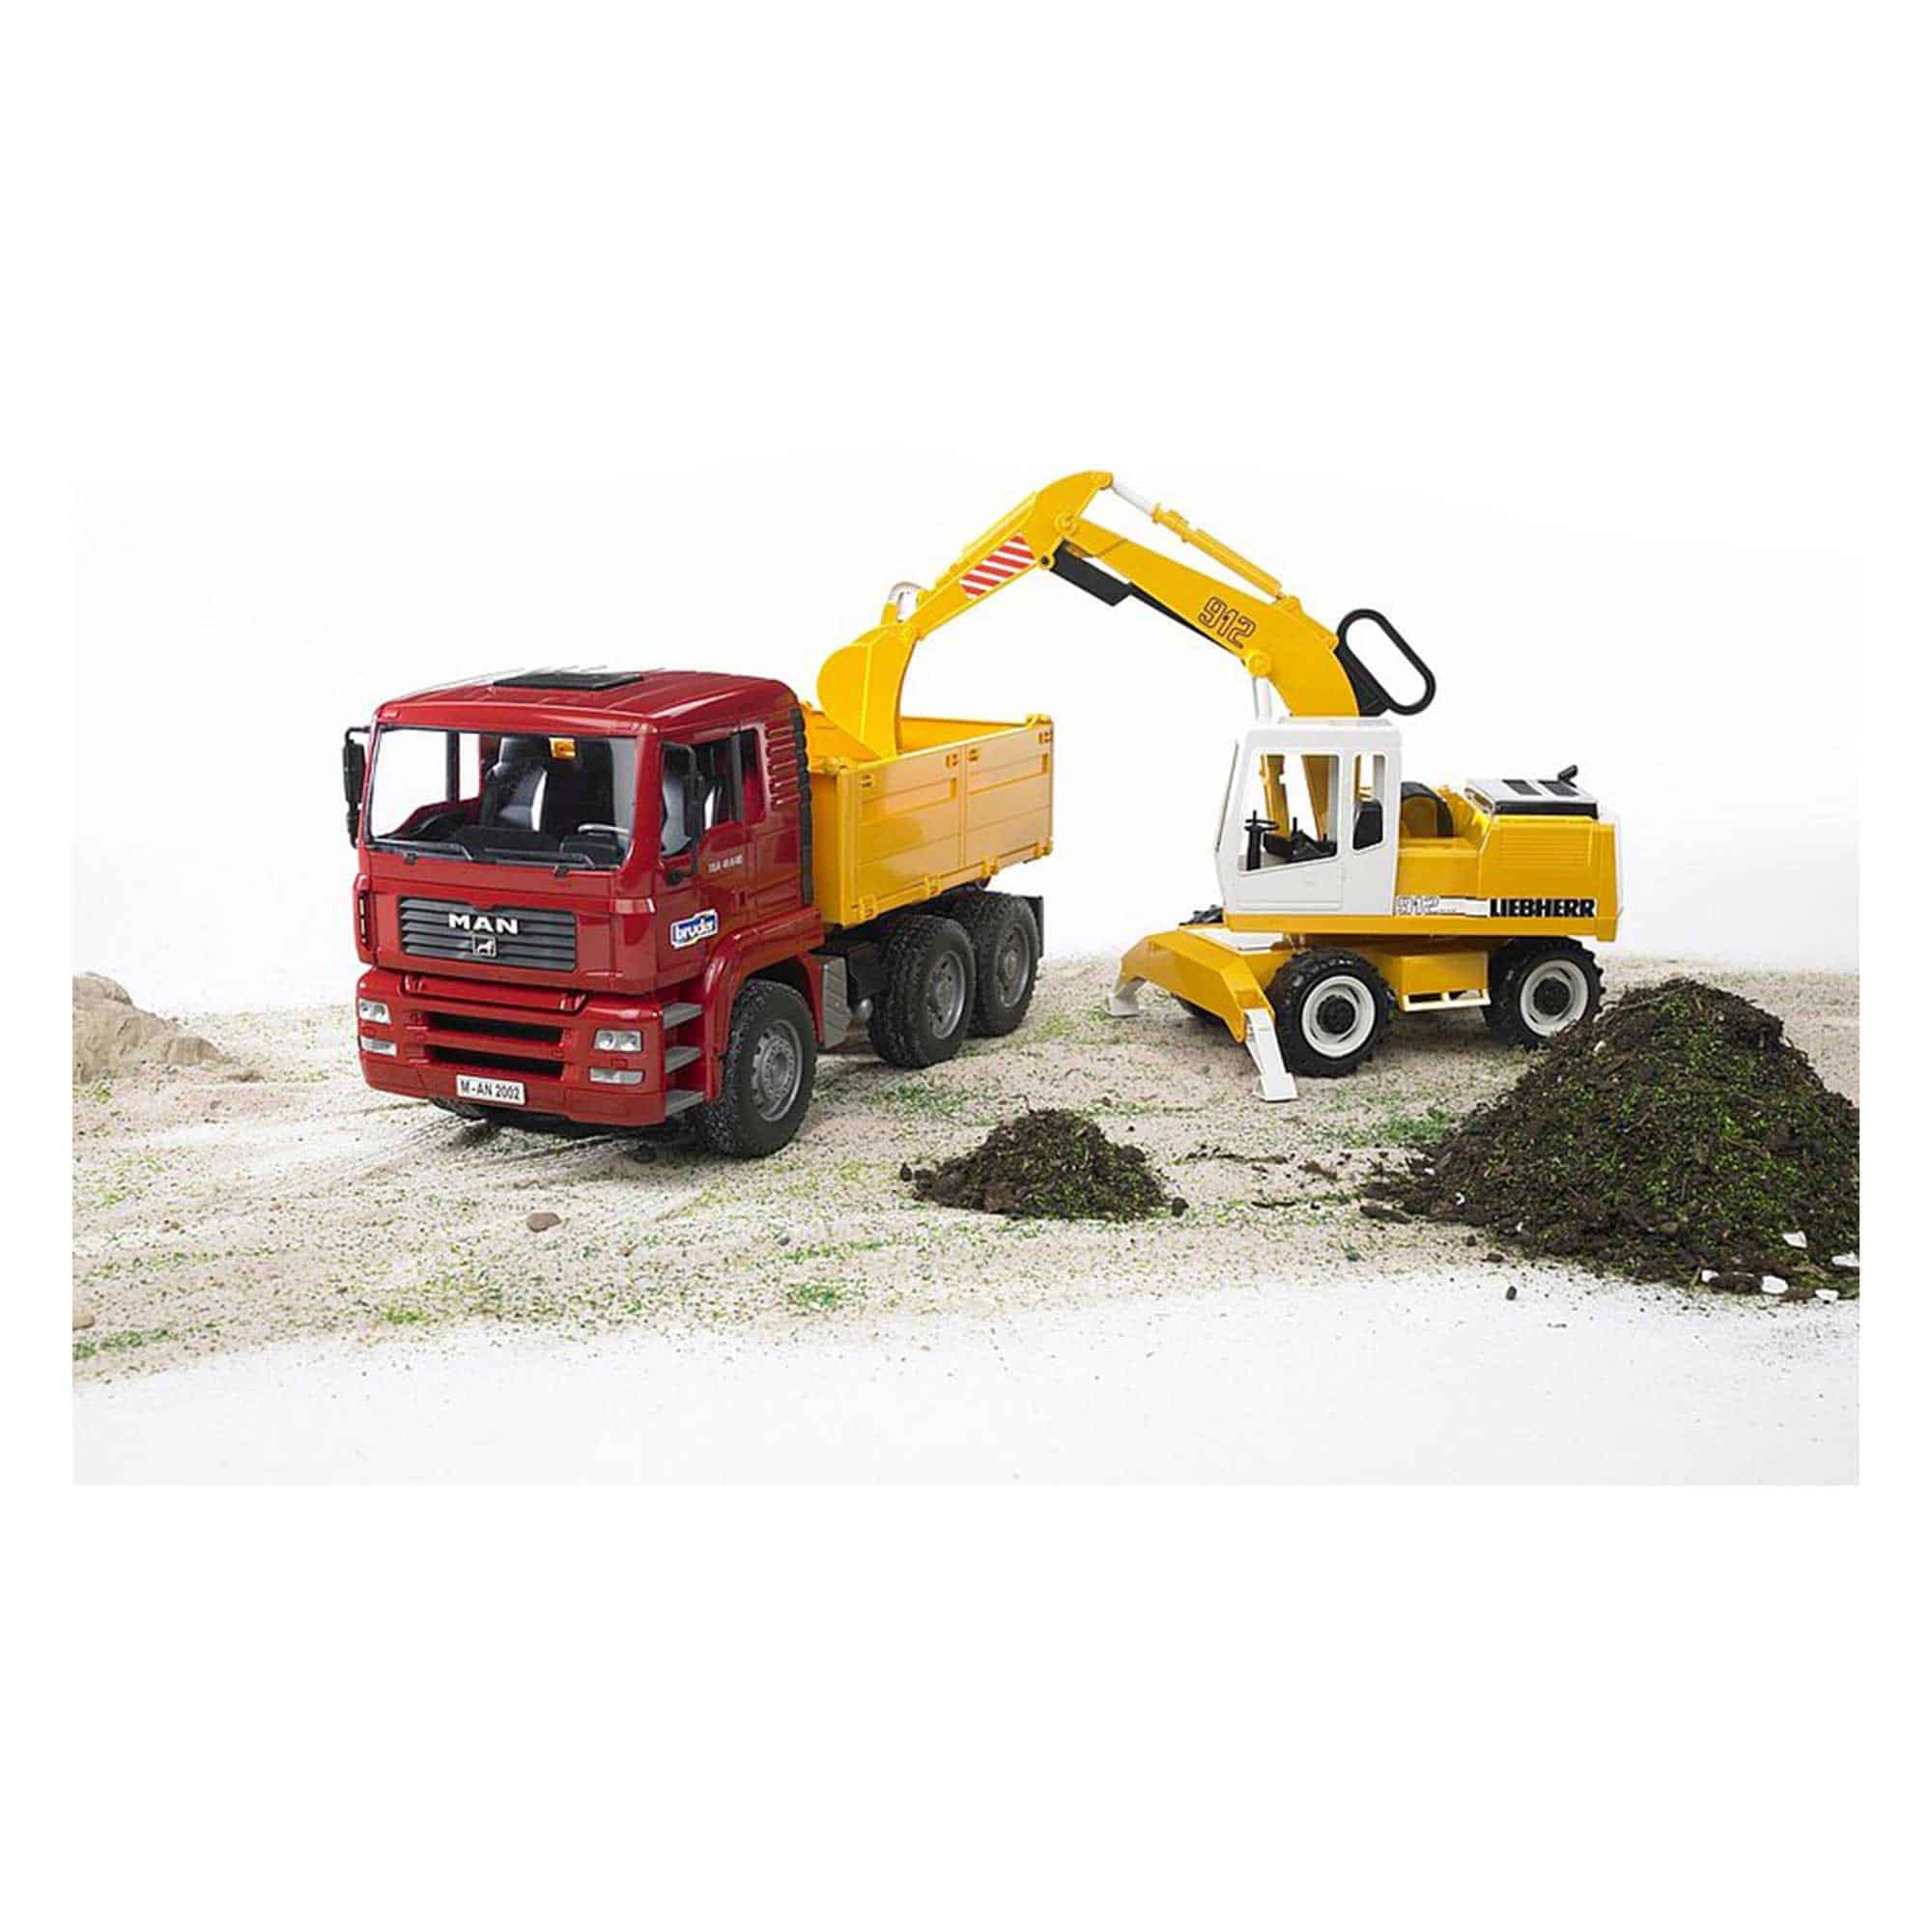 Bruder - MAN TGA Construction Truck with Liebherr Excavator